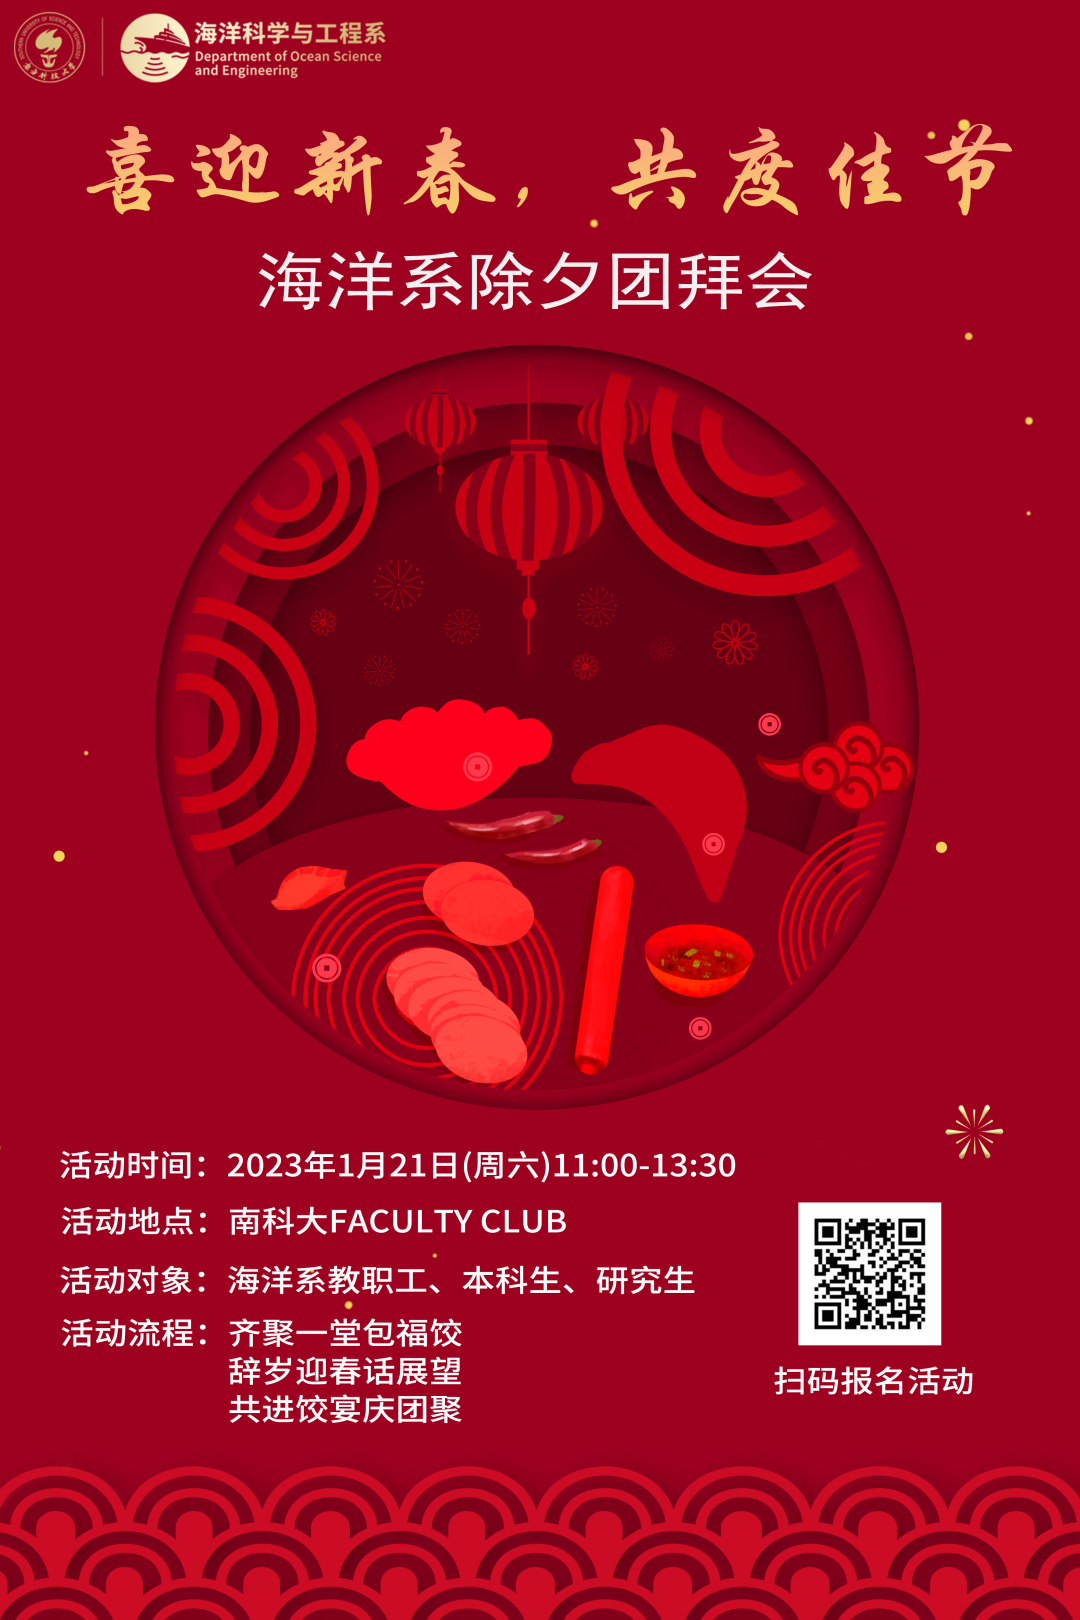 包饺子活动海报-公众号.png